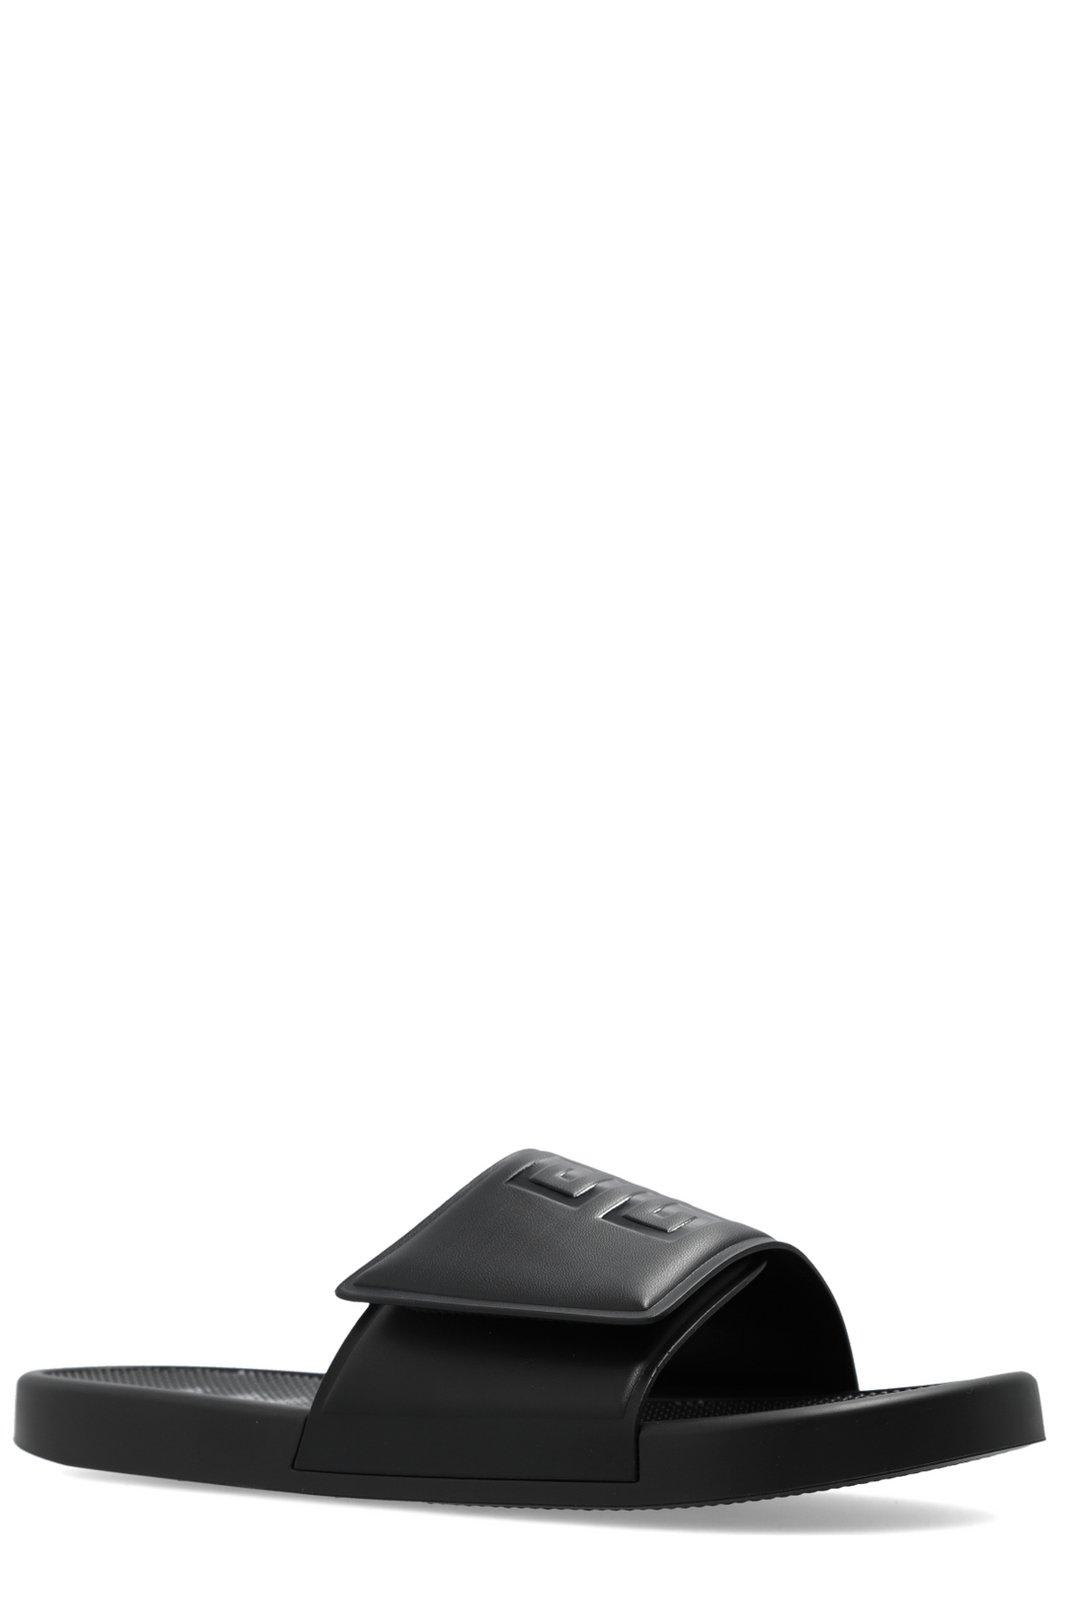 Shop Givenchy 4g Emblem Flat Sandals In Black/white